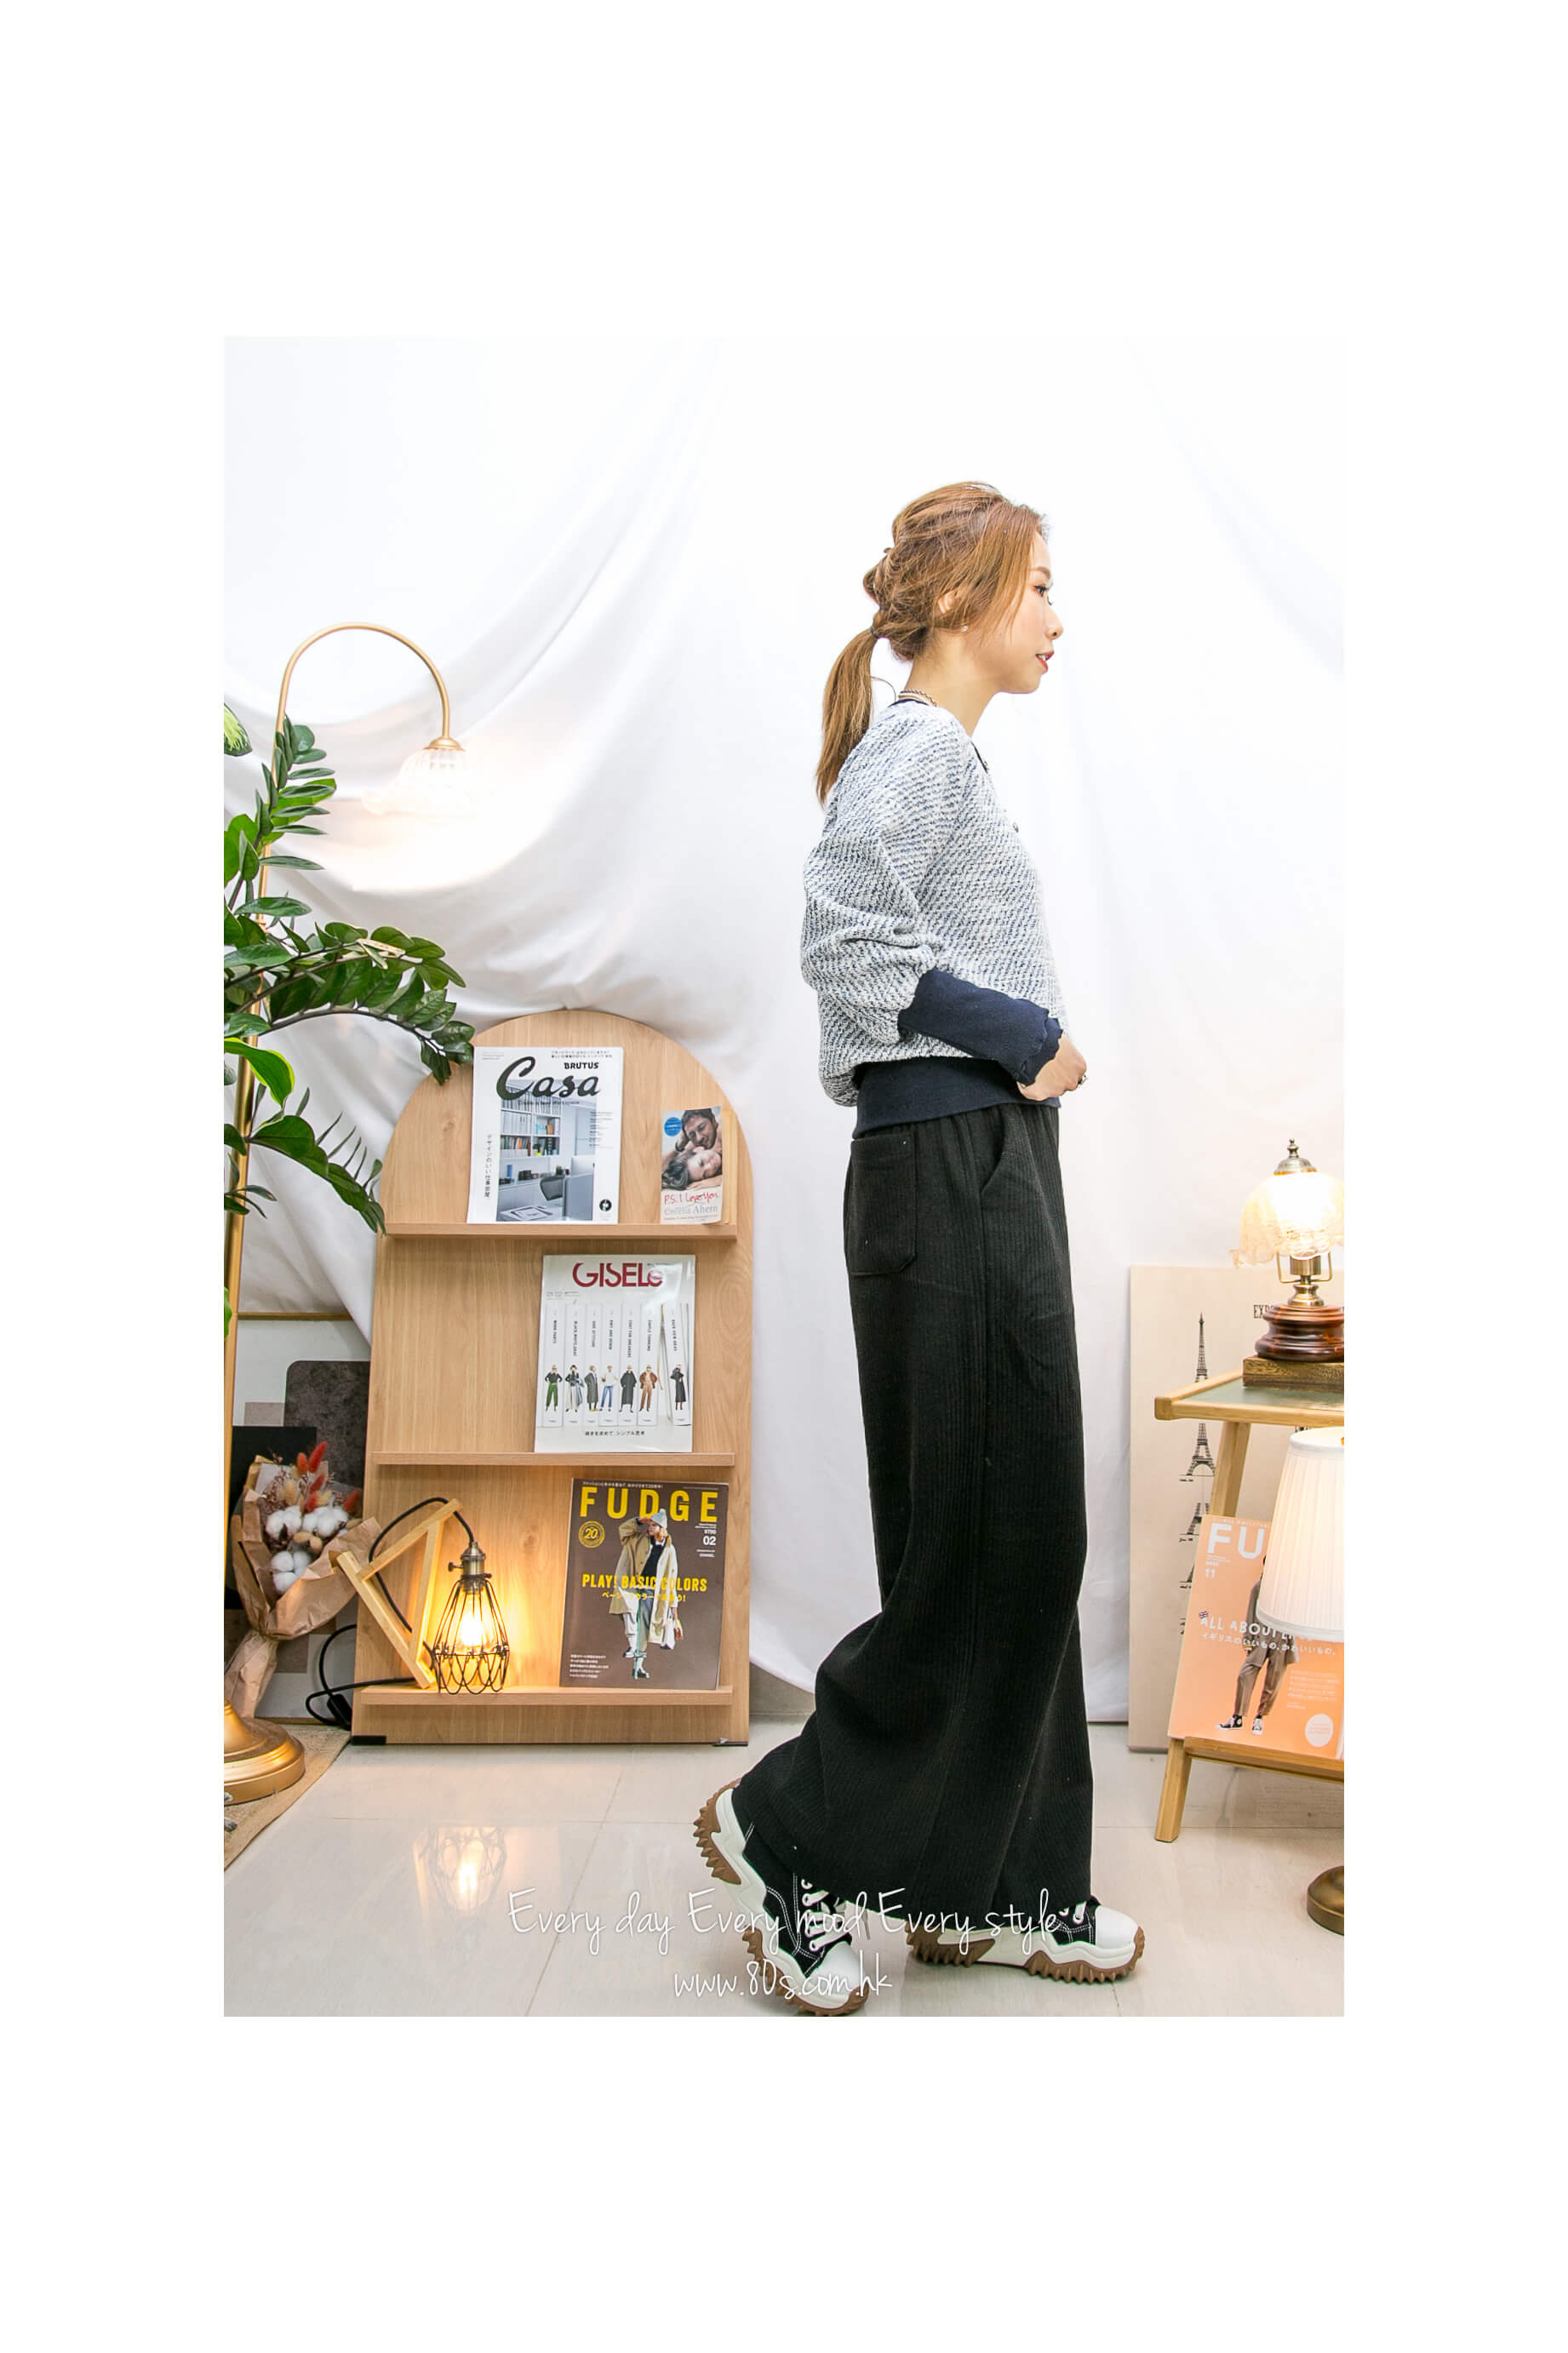 2215-1203- 隨意感 - 橡根腰束繩 ‧ 兩側袋 ‧ 坑紋絨絨料闊褲 (韓國)  